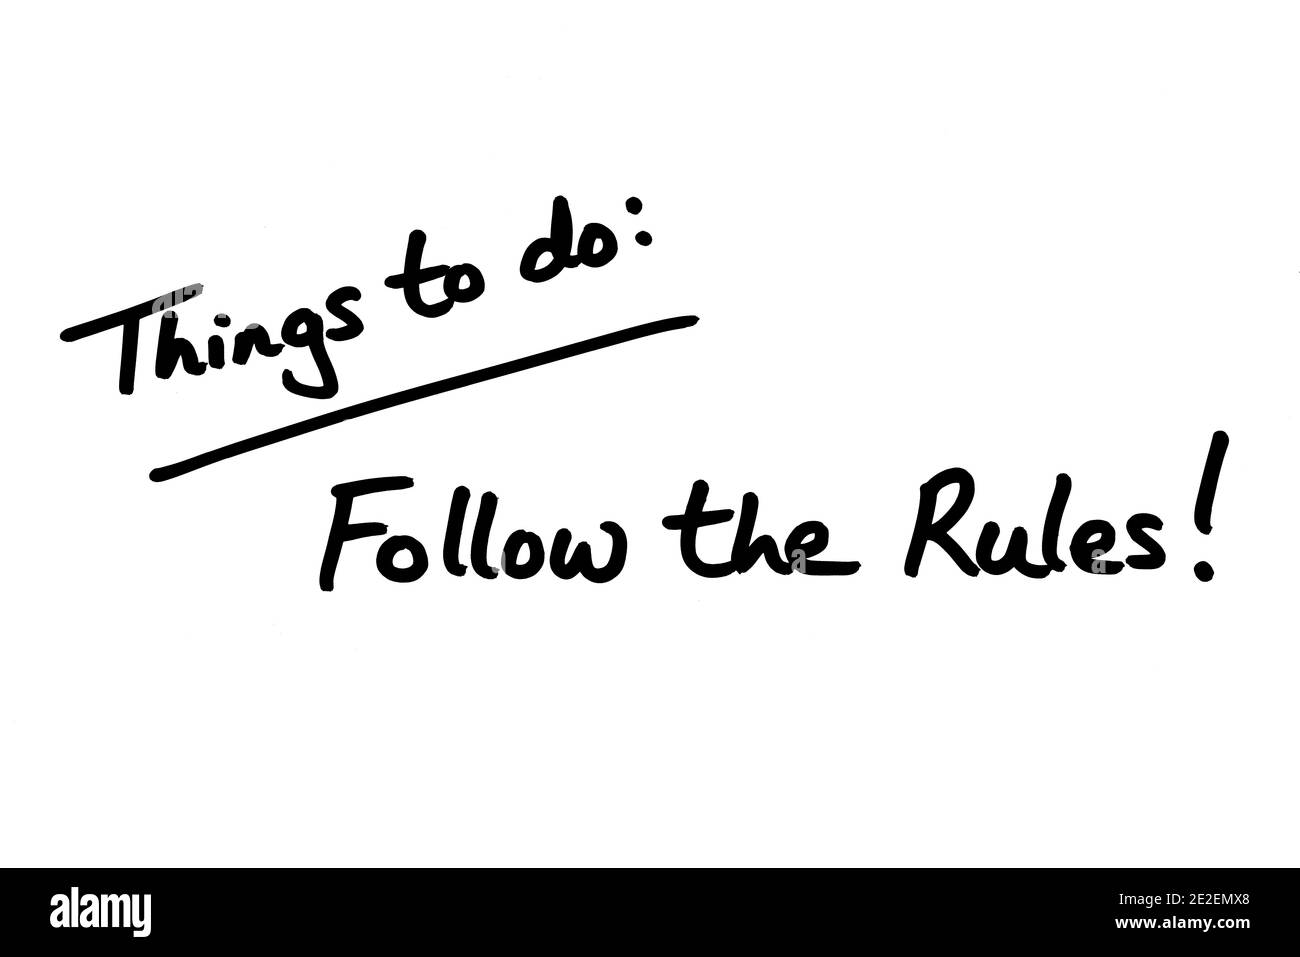 Choses à faire - suivre les règles! manuscrit sur fond blanc. Banque D'Images